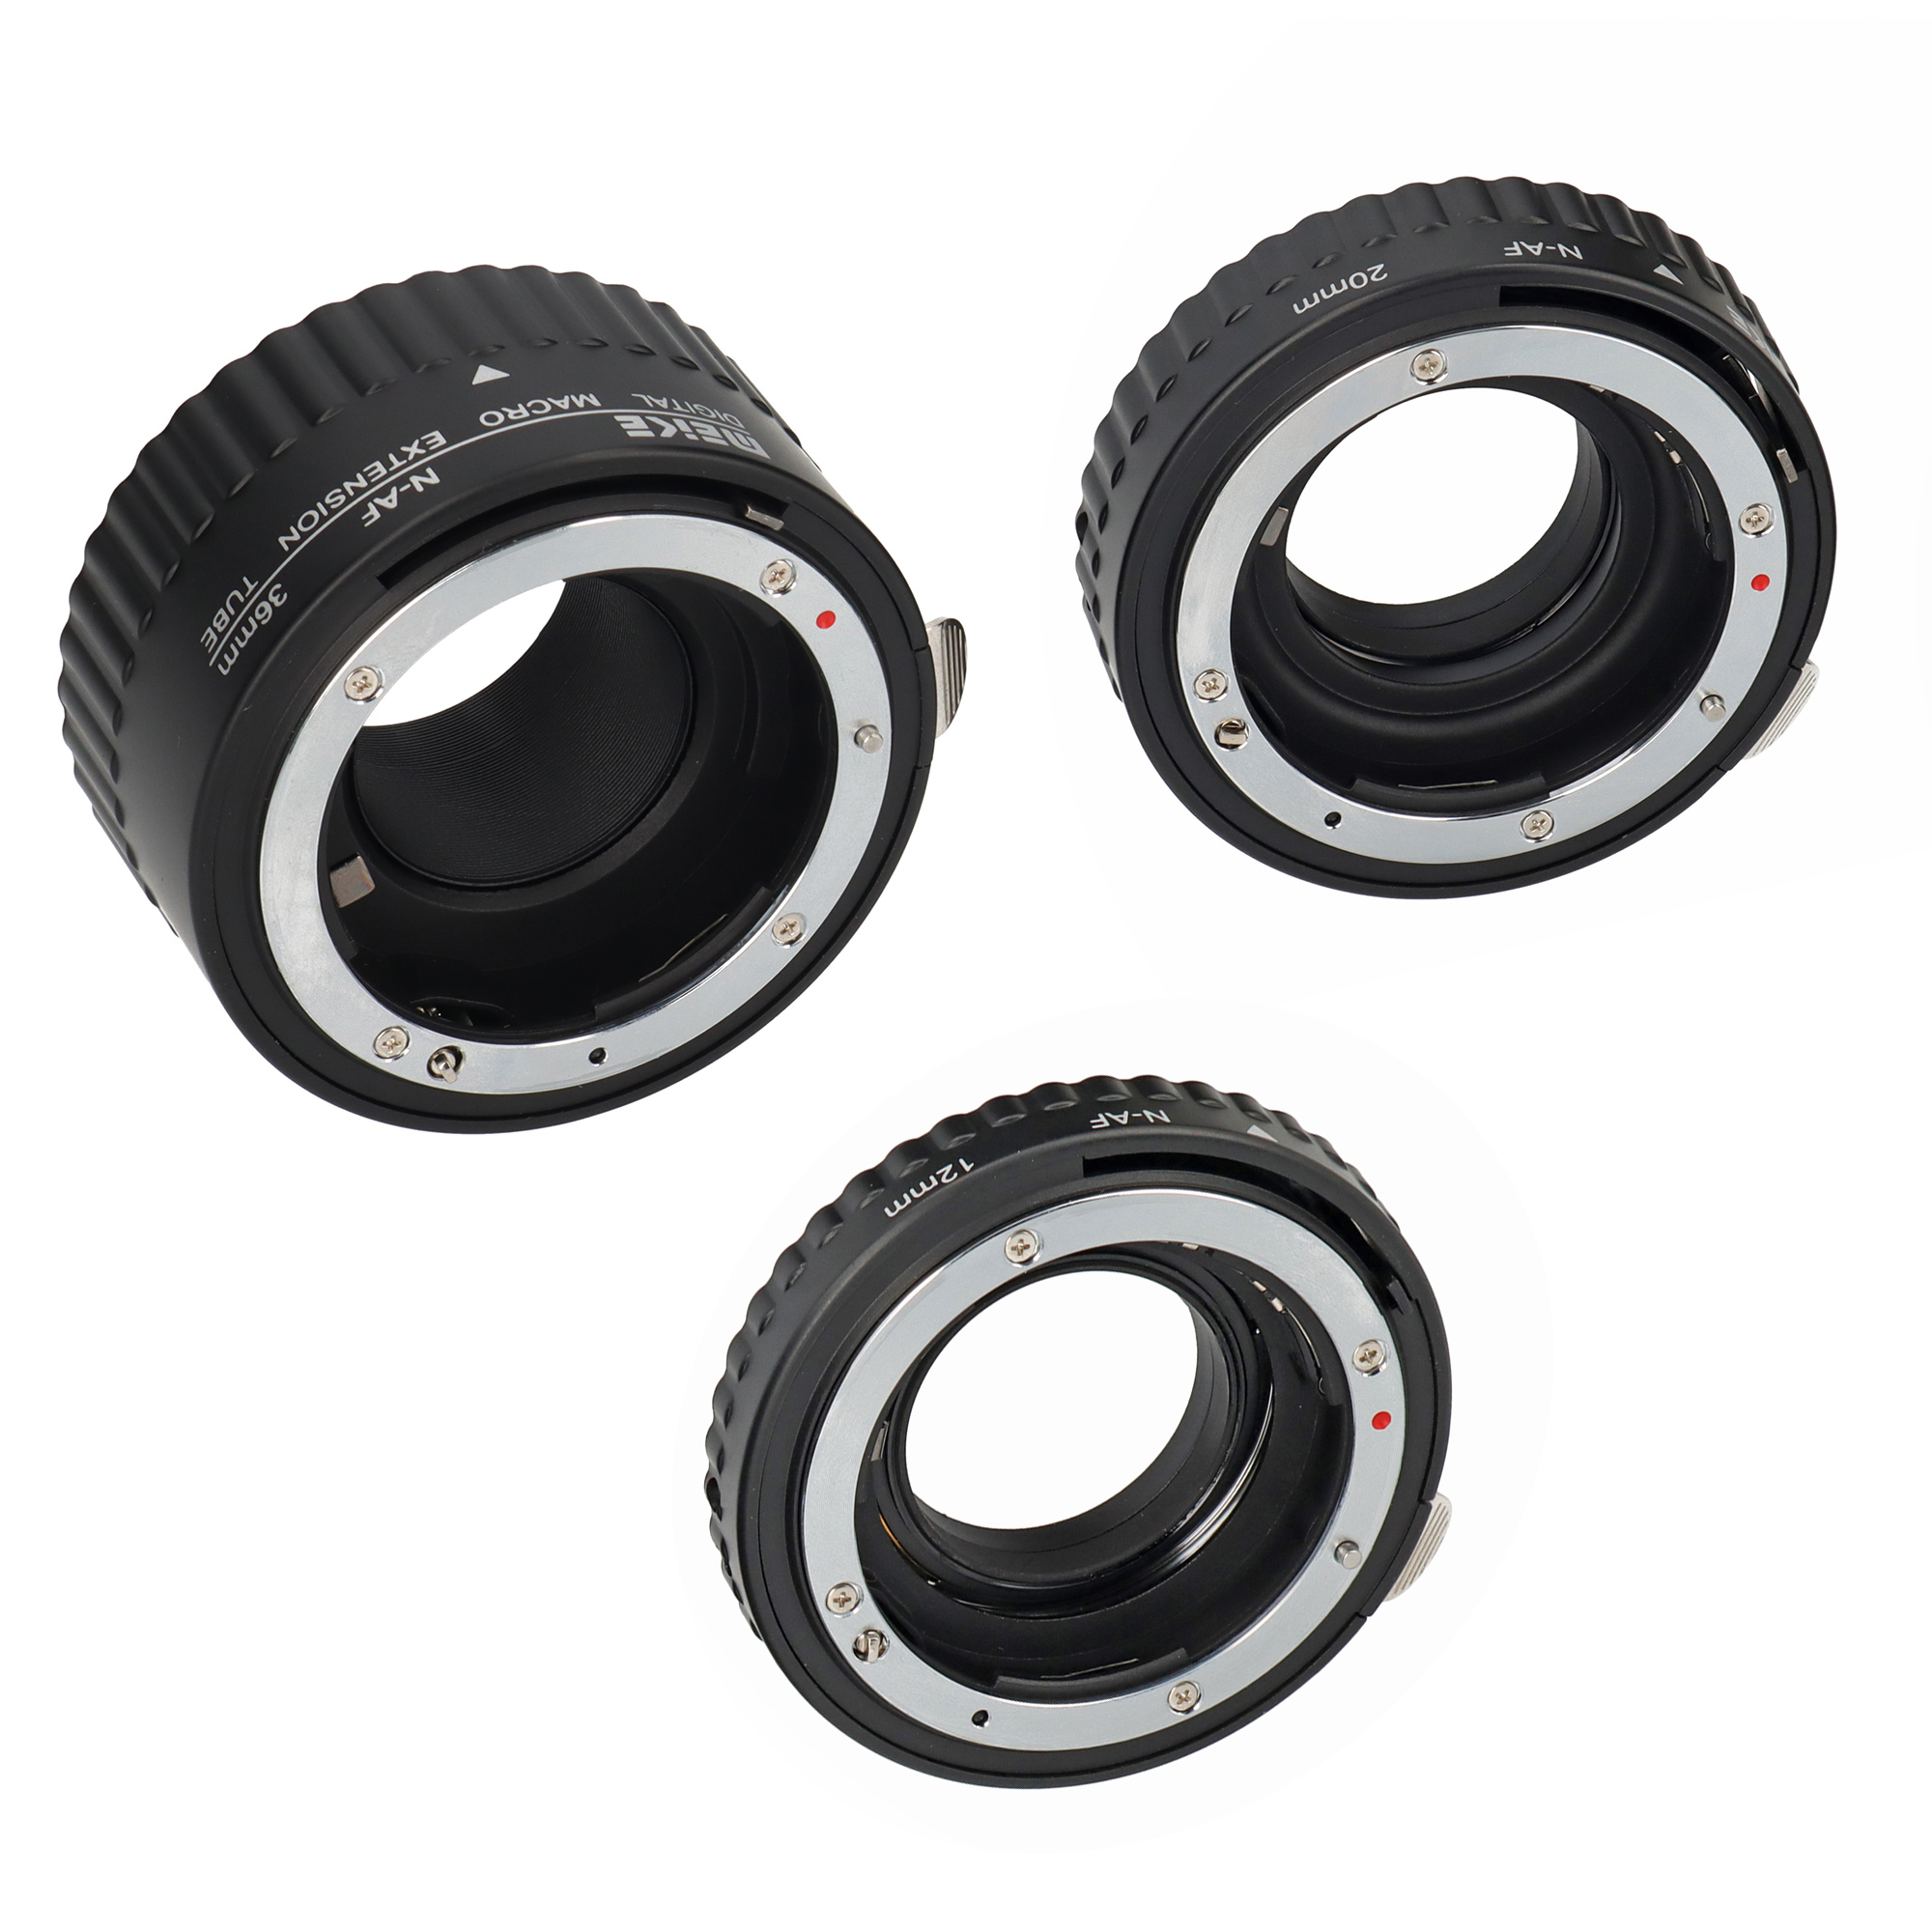 Meike AF Automatik Makro Zwischenringe für Nikon SLR Kameras z.B. D40/D60/D300/D3100/D7000 - Größen 12, 20 und 36 mm